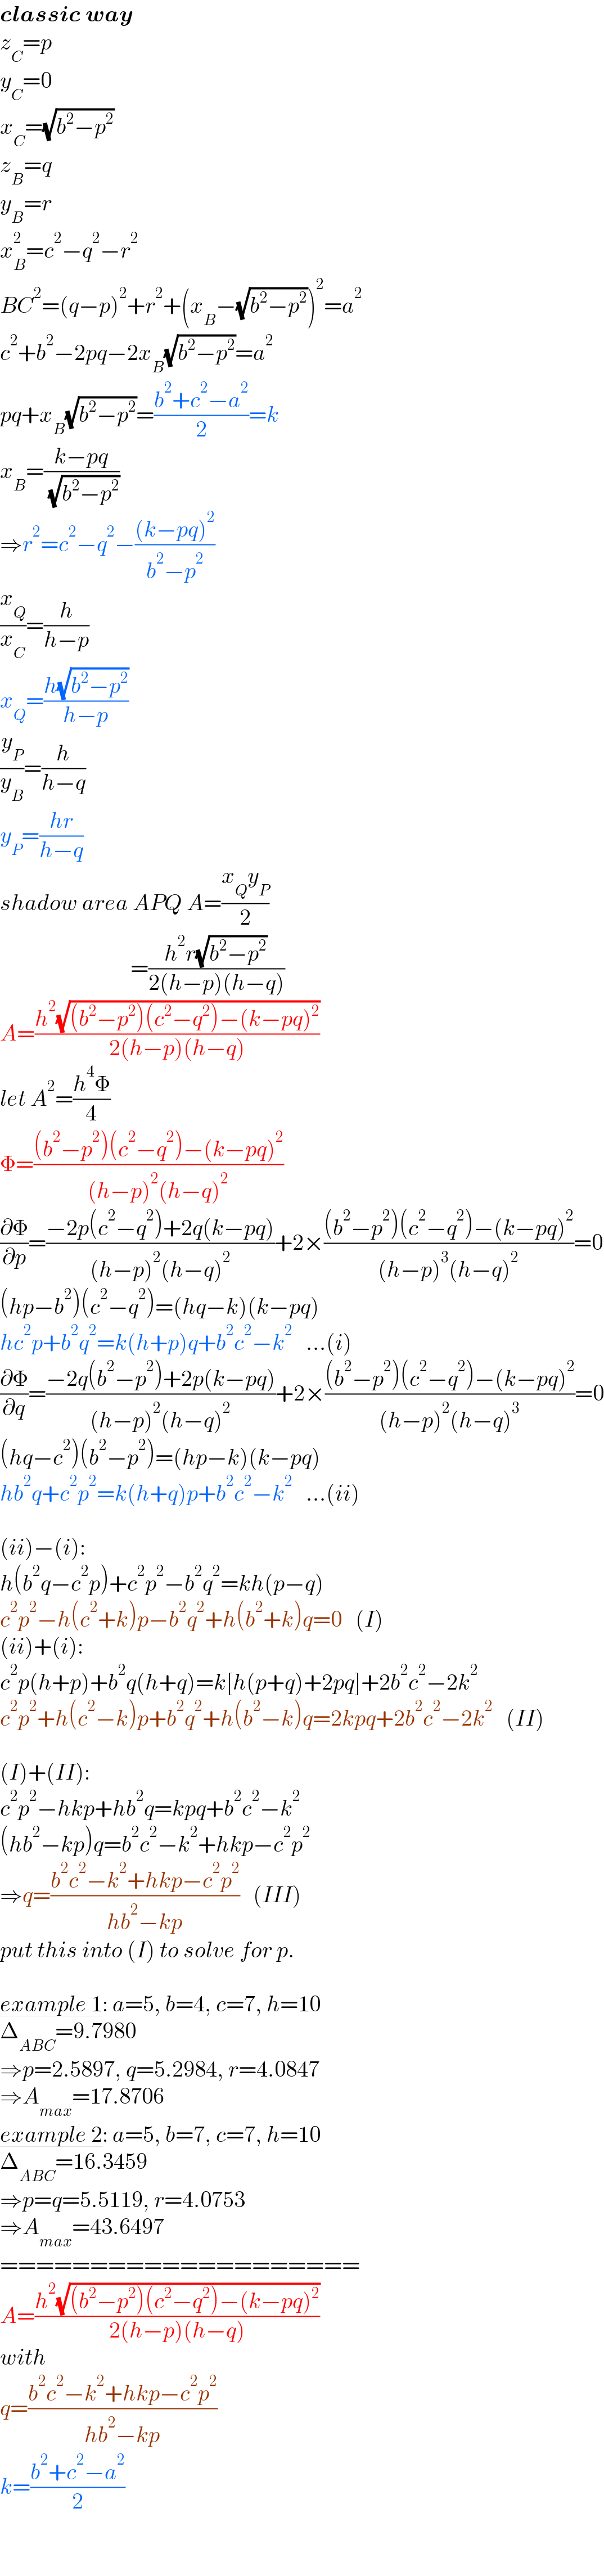 classic way  z_C =p  y_C =0  x_C =(√(b^2 −p^2 ))  z_B =q  y_B =r  x_B ^2 =c^2 −q^2 −r^2   BC^2 =(q−p)^2 +r^2 +(x_B −(√(b^2 −p^2 )))^2 =a^2   c^2 +b^2 −2pq−2x_B (√(b^2 −p^2 ))=a^2   pq+x_B (√(b^2 −p^2 ))=((b^2 +c^2 −a^2 )/2)=k  x_B =((k−pq)/( (√(b^2 −p^2 ))))  ⇒r^2 =c^2 −q^2 −(((k−pq)^2 )/(b^2 −p^2 ))  (x_Q /x_C )=(h/(h−p))  x_Q =((h(√(b^2 −p^2 )))/(h−p))  (y_P /y_B )=(h/(h−q))  y_P =((hr)/(h−q))  shadow area APQ A=((x_Q y_P )/2)                               =((h^2 r(√(b^2 −p^2 )))/(2(h−p)(h−q)))  A=((h^2 (√((b^2 −p^2 )(c^2 −q^2 )−(k−pq)^2 )))/(2(h−p)(h−q)))  let A^2 =((h^4 Φ)/4)  Φ=(((b^2 −p^2 )(c^2 −q^2 )−(k−pq)^2 )/((h−p)^2 (h−q)^2 ))  (∂Φ/∂p)=((−2p(c^2 −q^2 )+2q(k−pq))/((h−p)^2 (h−q)^2 ))+2×(((b^2 −p^2 )(c^2 −q^2 )−(k−pq)^2 )/((h−p)^3 (h−q)^2 ))=0  (hp−b^2 )(c^2 −q^2 )=(hq−k)(k−pq)  hc^2 p+b^2 q^2 =k(h+p)q+b^2 c^2 −k^2    ...(i)  (∂Φ/∂q)=((−2q(b^2 −p^2 )+2p(k−pq))/((h−p)^2 (h−q)^2 ))+2×(((b^2 −p^2 )(c^2 −q^2 )−(k−pq)^2 )/((h−p)^2 (h−q)^3 ))=0  (hq−c^2 )(b^2 −p^2 )=(hp−k)(k−pq)  hb^2 q+c^2 p^2 =k(h+q)p+b^2 c^2 −k^2    ...(ii)    (ii)−(i):  h(b^2 q−c^2 p)+c^2 p^2 −b^2 q^2 =kh(p−q)  c^2 p^2 −h(c^2 +k)p−b^2 q^2 +h(b^2 +k)q=0   (I)  (ii)+(i):  c^2 p(h+p)+b^2 q(h+q)=k[h(p+q)+2pq]+2b^2 c^2 −2k^2   c^2 p^2 +h(c^2 −k)p+b^2 q^2 +h(b^2 −k)q=2kpq+2b^2 c^2 −2k^2    (II)    (I)+(II):  c^2 p^2 −hkp+hb^2 q=kpq+b^2 c^2 −k^2   (hb^2 −kp)q=b^2 c^2 −k^2 +hkp−c^2 p^2   ⇒q=((b^2 c^2 −k^2 +hkp−c^2 p^2 )/(hb^2 −kp))   (III)  put this into (I) to solve for p.    example 1: a=5, b=4, c=7, h=10  Δ_(ABC) =9.7980  ⇒p=2.5897, q=5.2984, r=4.0847  ⇒A_(max) =17.8706  example 2: a=5, b=7, c=7, h=10  Δ_(ABC) =16.3459  ⇒p=q=5.5119, r=4.0753  ⇒A_(max) =43.6497  ====================  A=((h^2 (√((b^2 −p^2 )(c^2 −q^2 )−(k−pq)^2 )))/(2(h−p)(h−q)))  with  q=((b^2 c^2 −k^2 +hkp−c^2 p^2 )/(hb^2 −kp))  k=((b^2 +c^2 −a^2 )/2)  